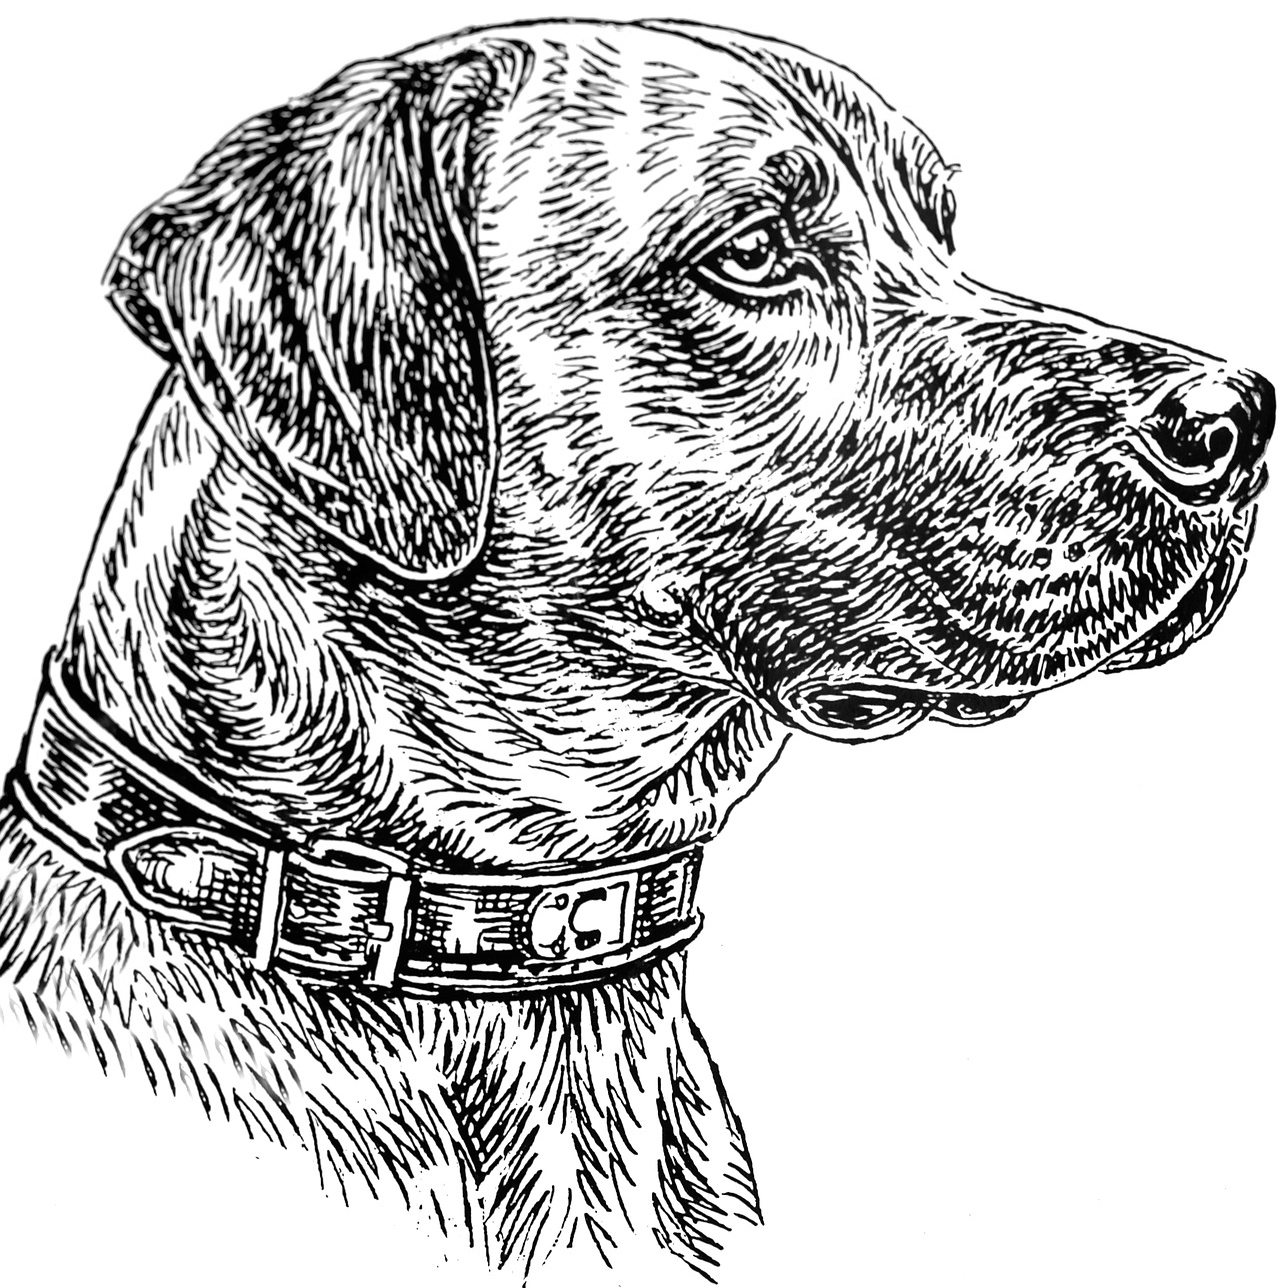 Disegno da colorare di testa di cane Labrador